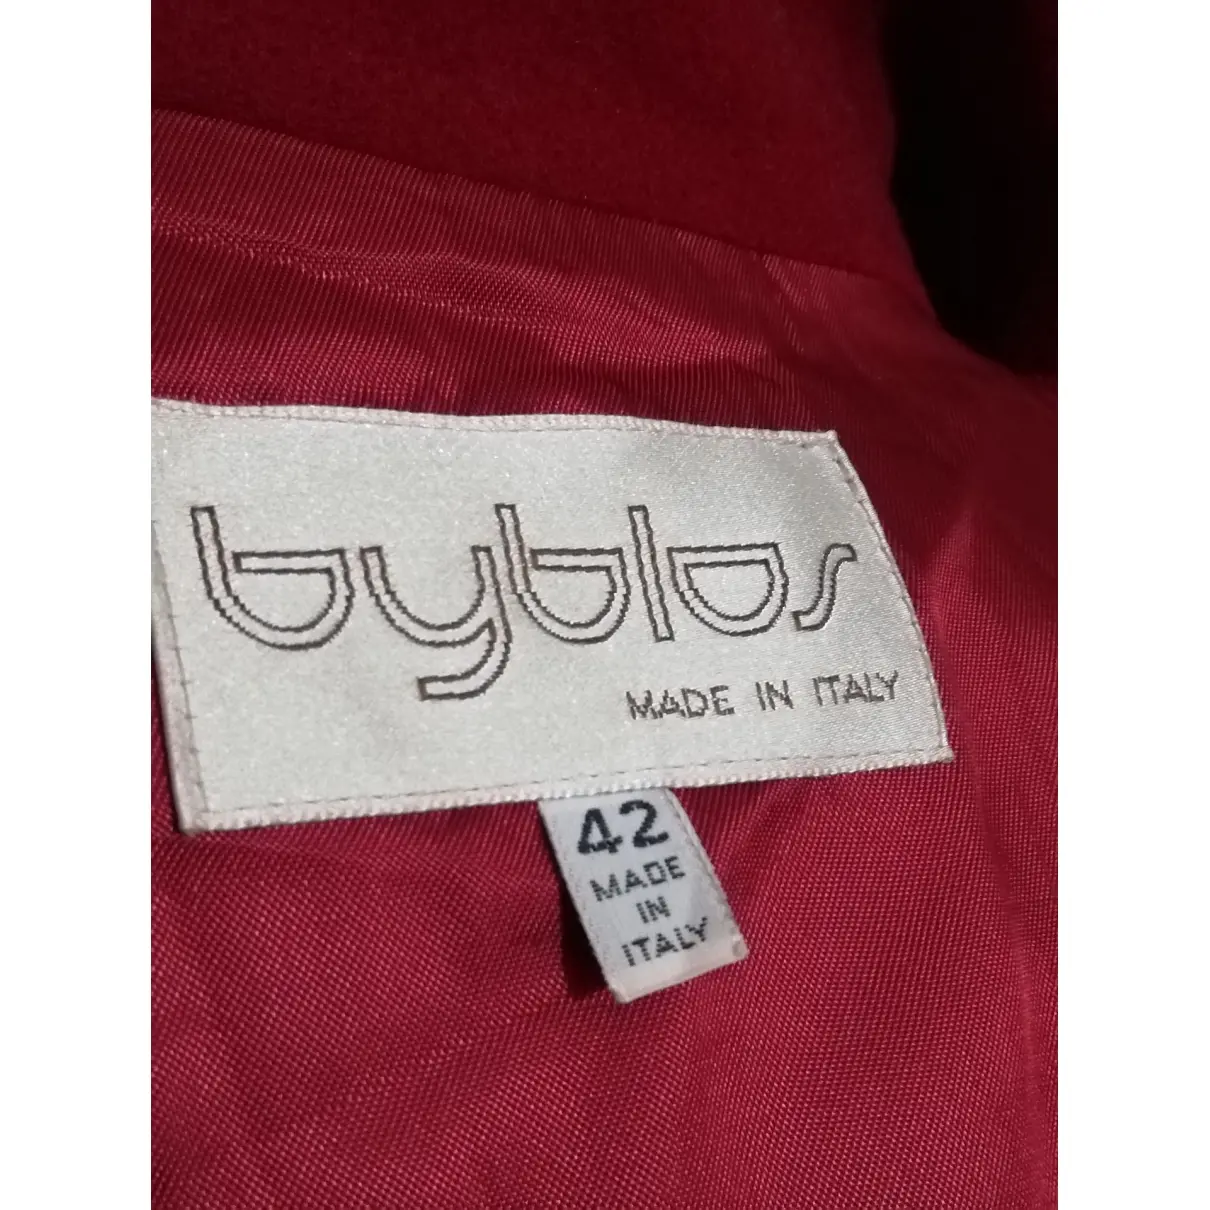 Buy Byblos Wool coat online